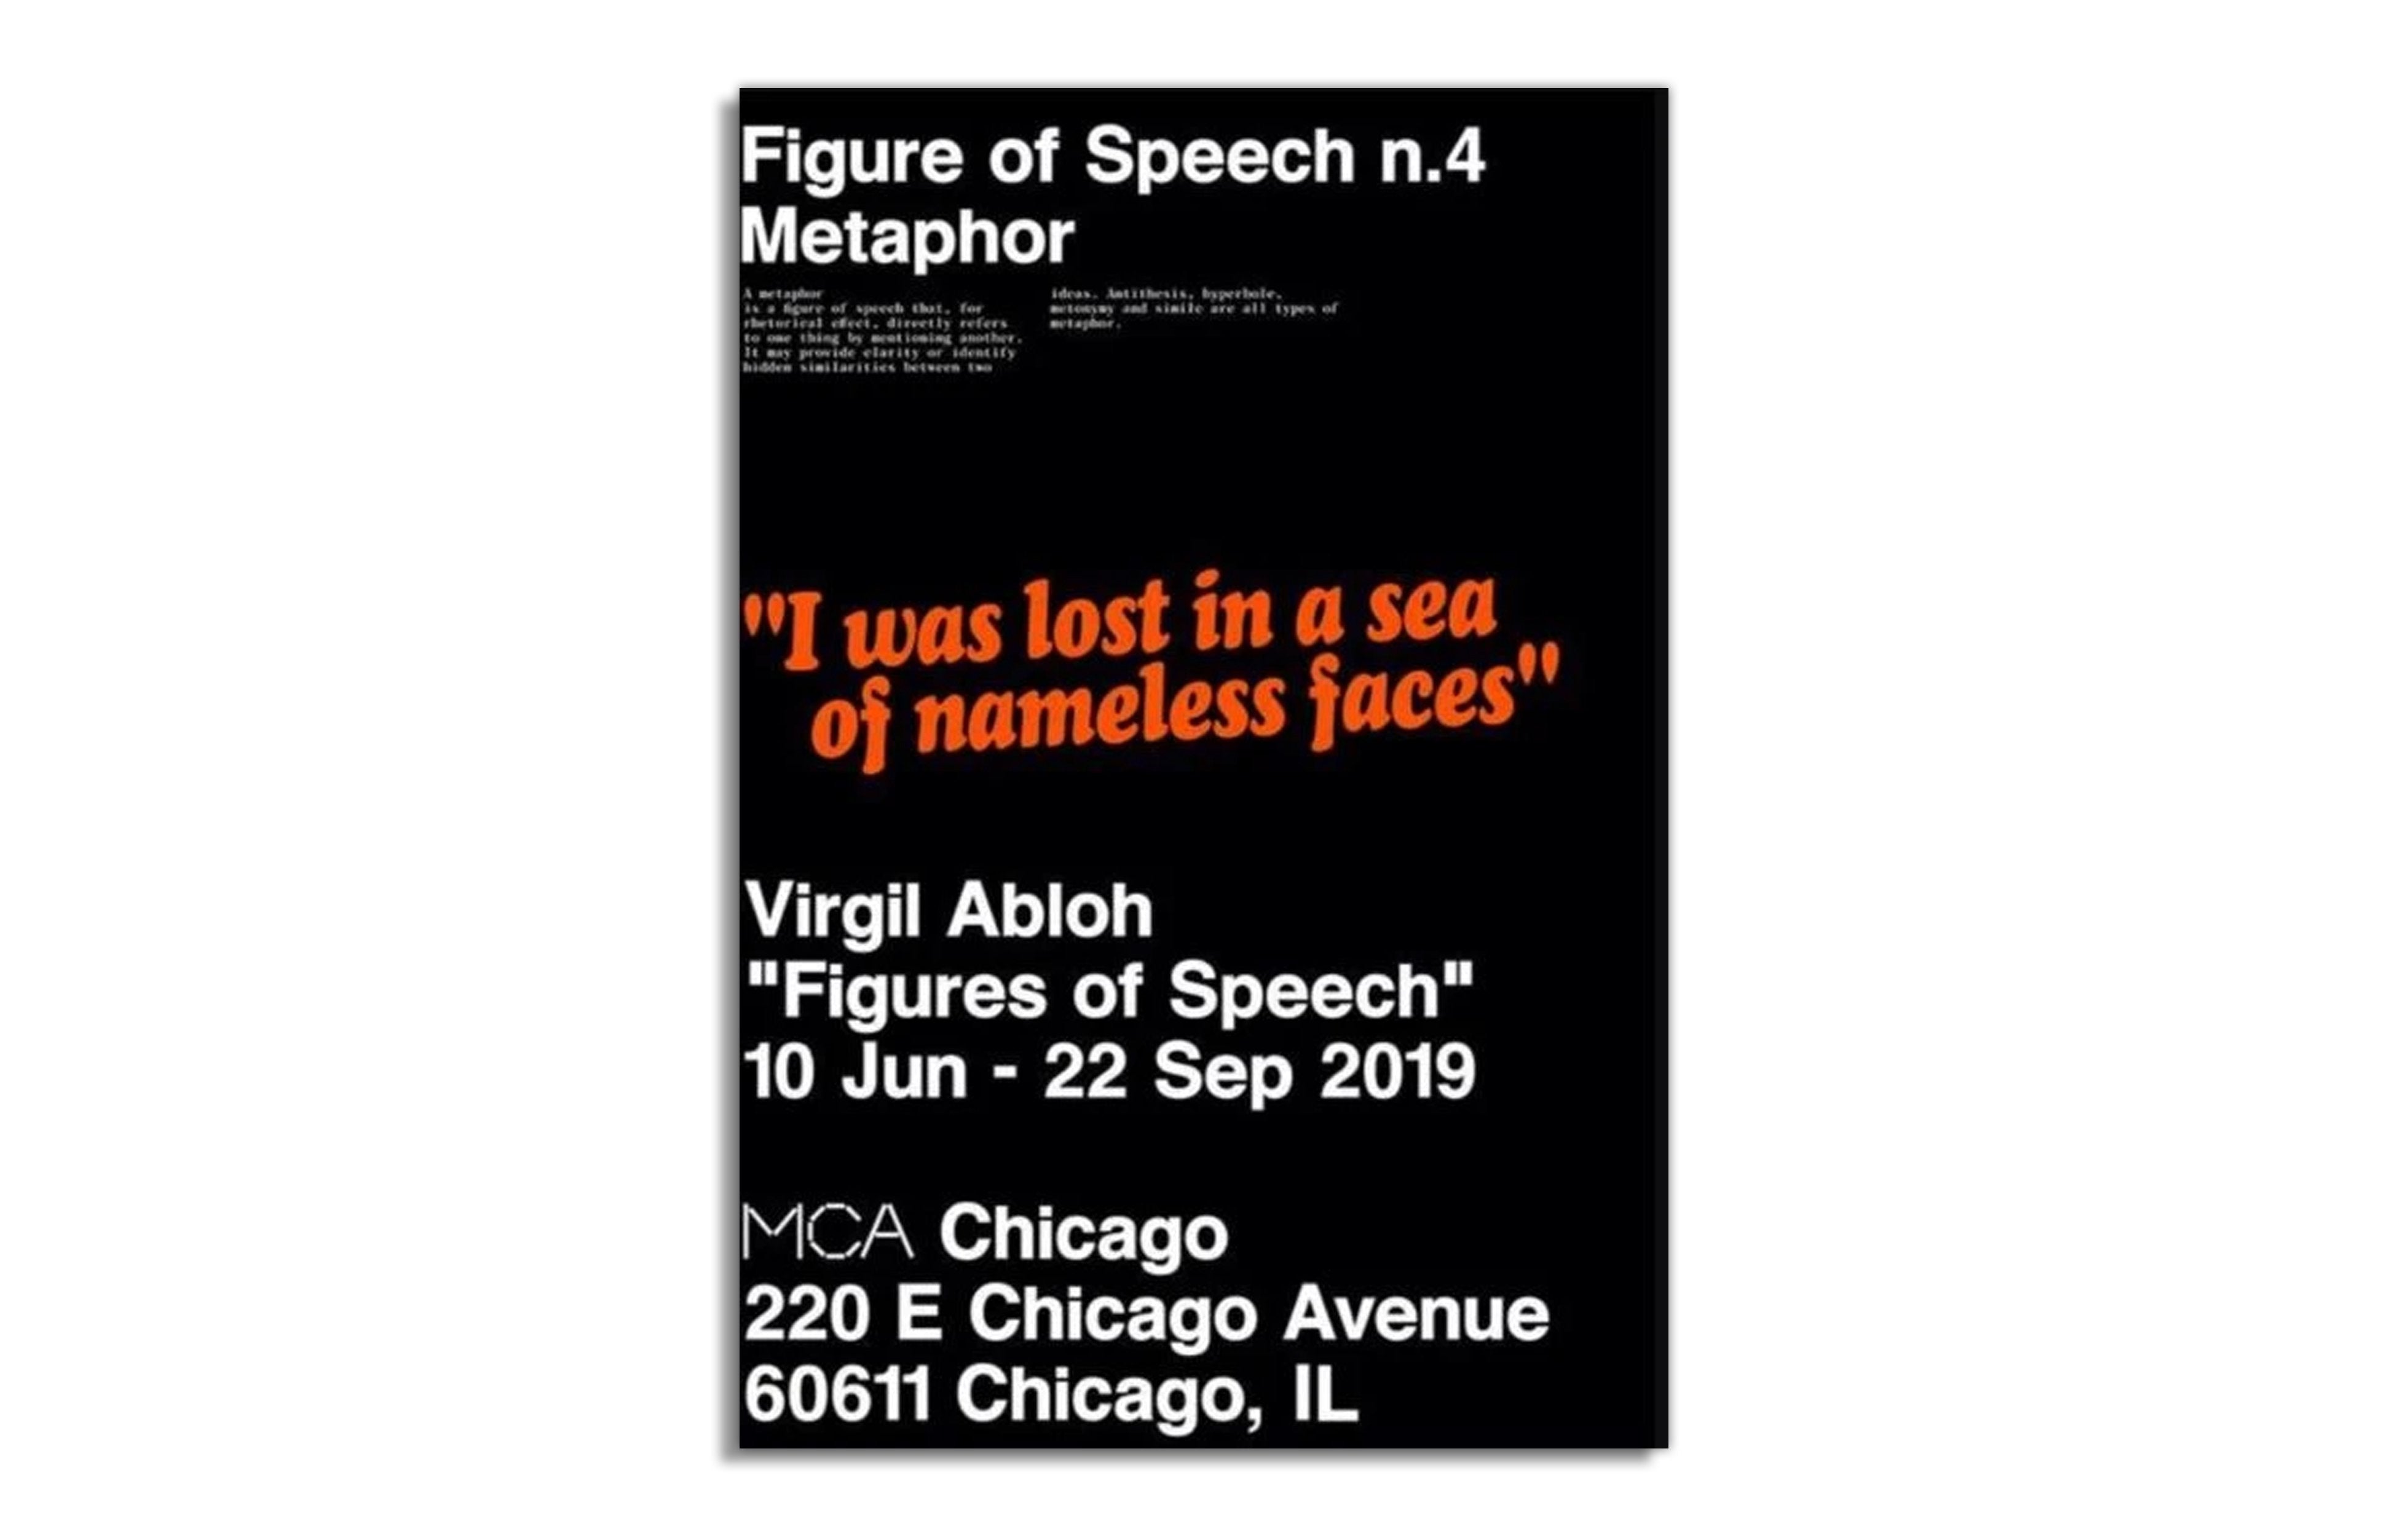 Virgil Abloh “Figures of Speech” x Brooklyn museum poster, Social  Sculpture